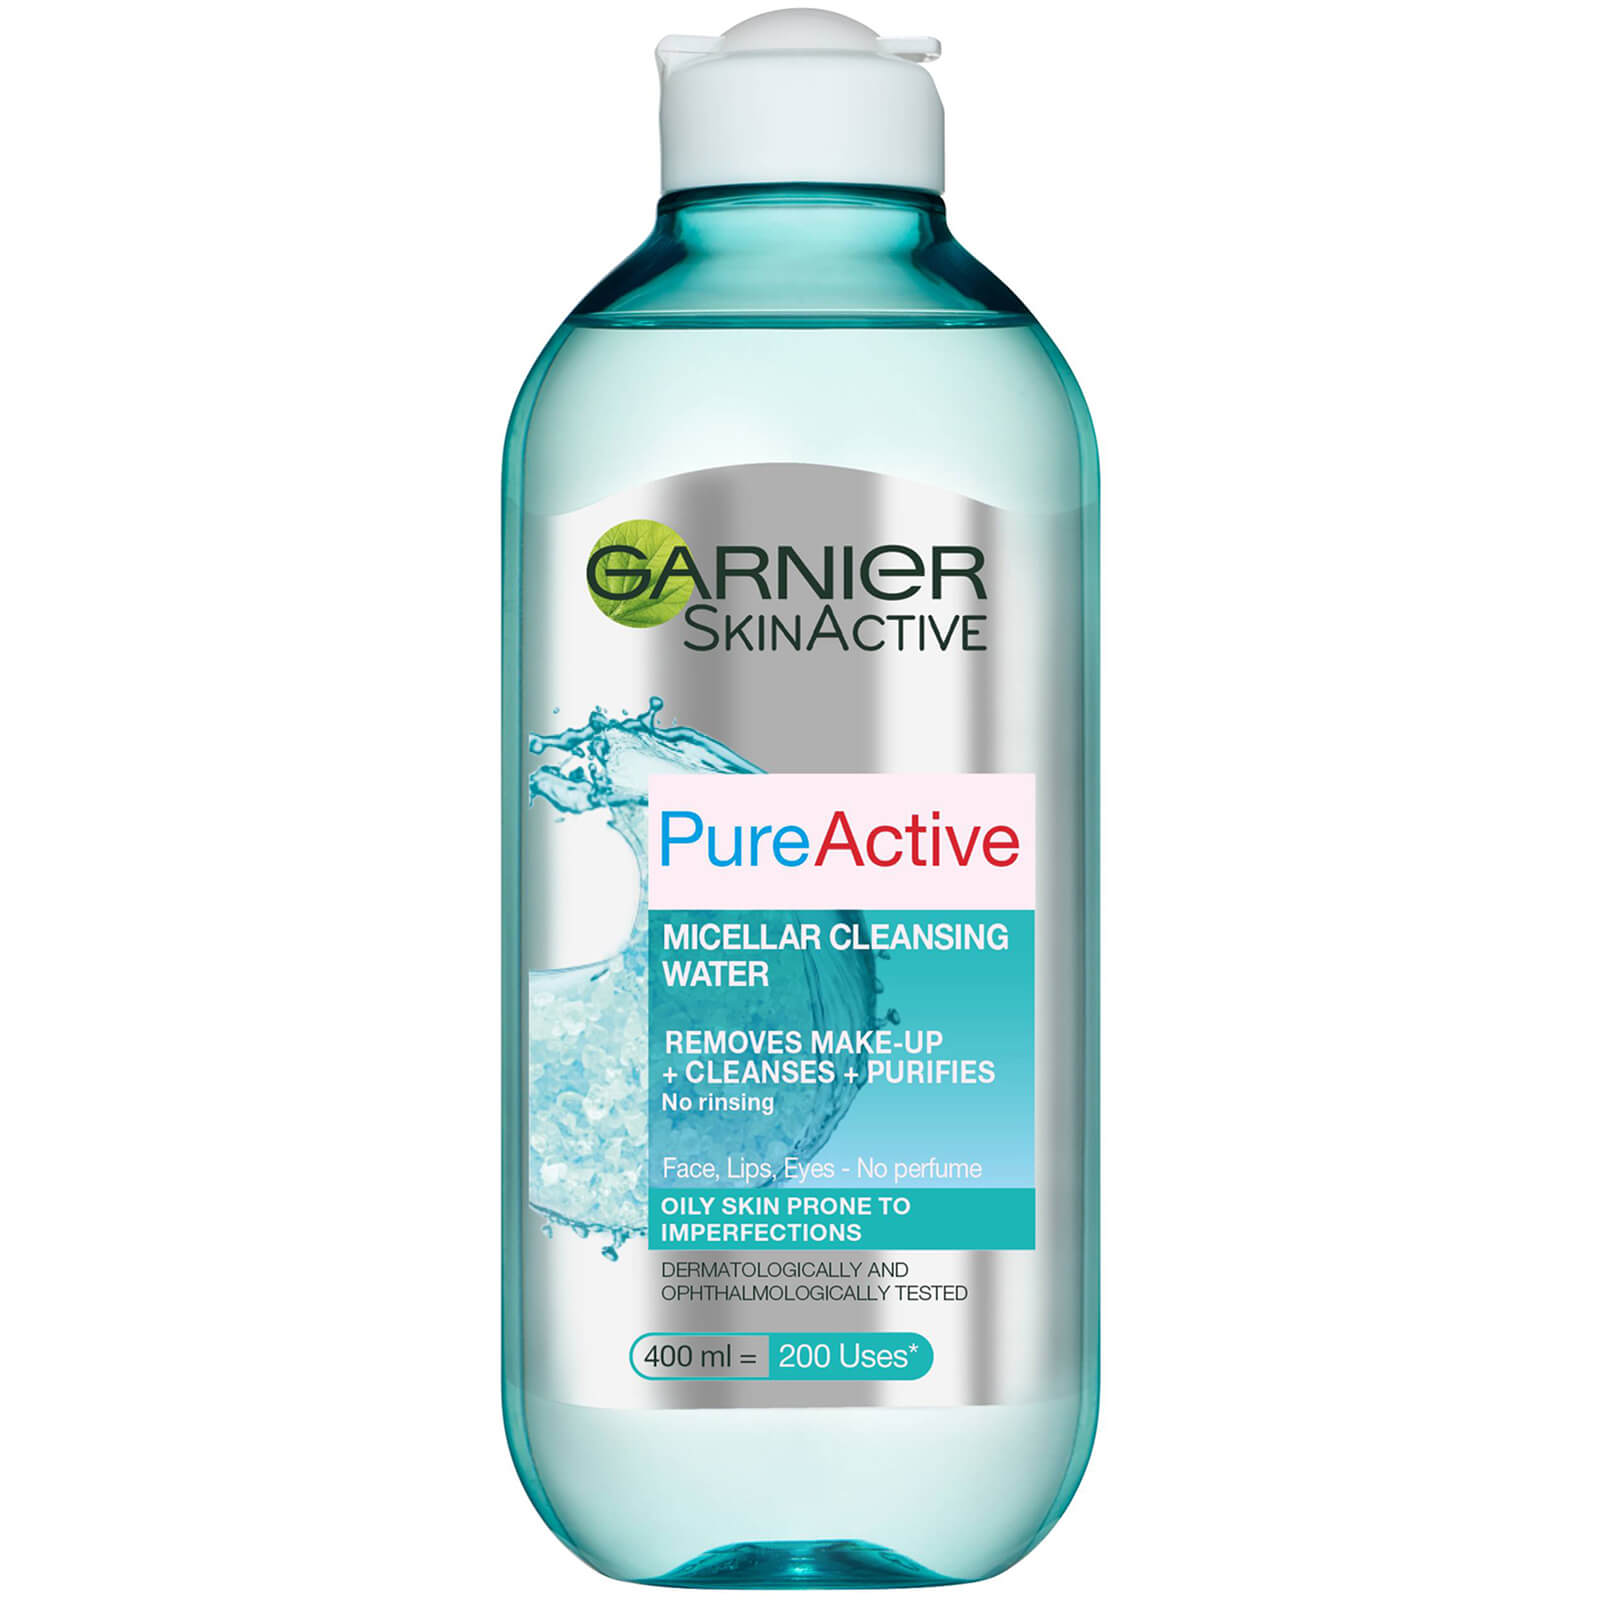 Garnier Pure Active acqua micellare detergente (400 ml)